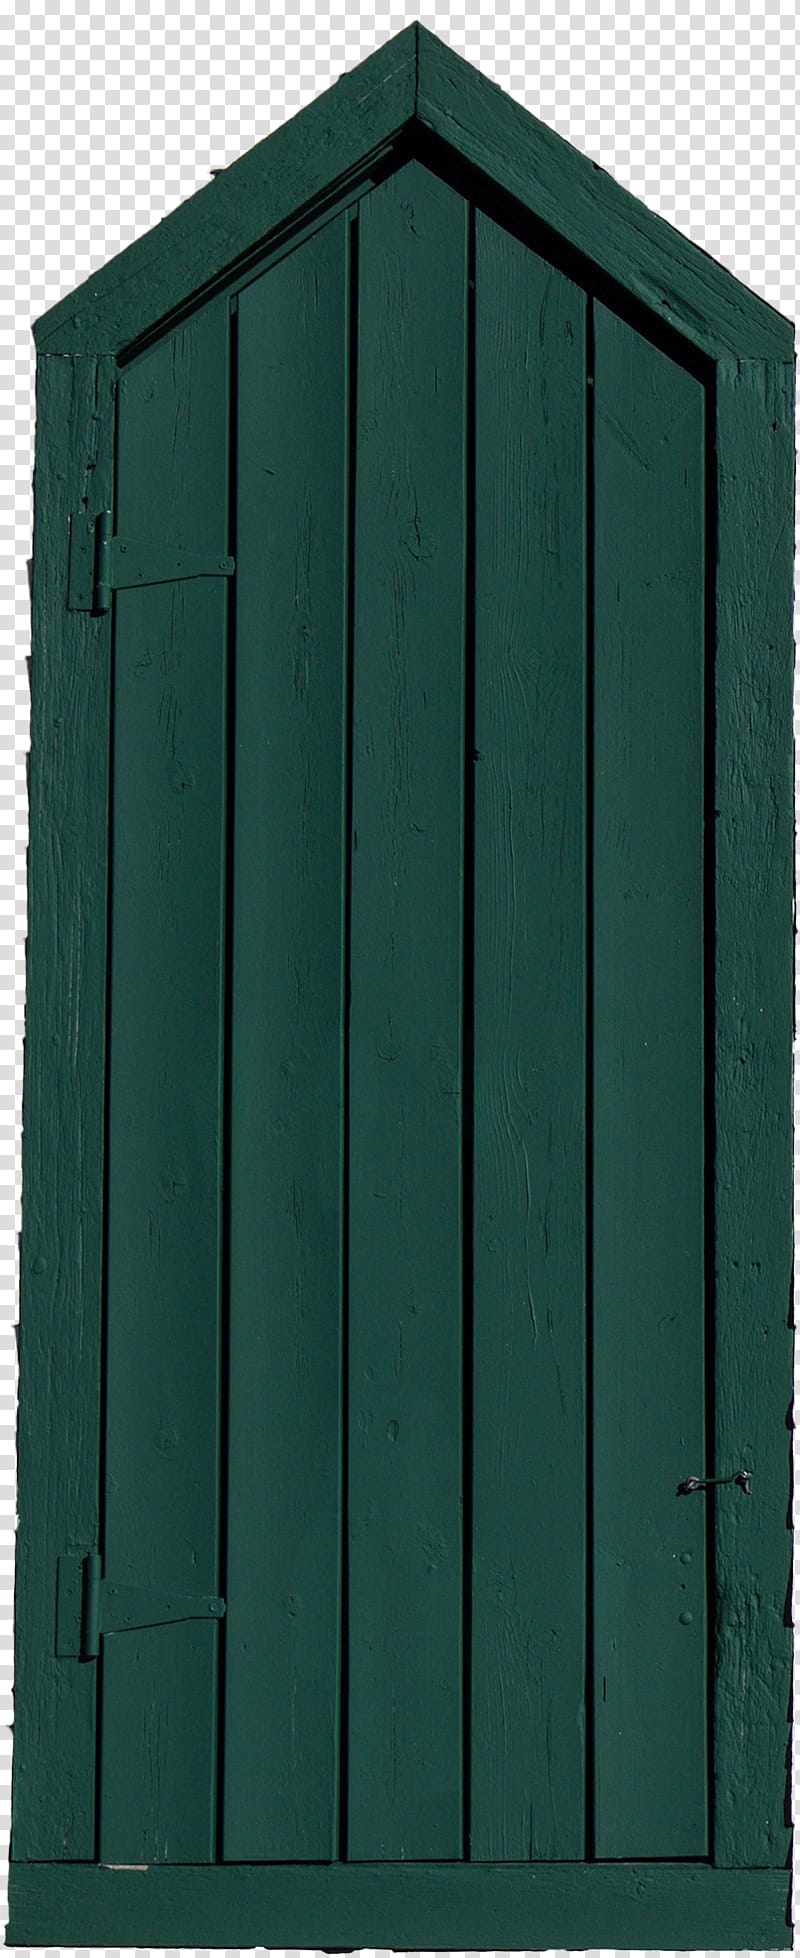 Secret Santa Gift Doors, green woodn door transparent background PNG clipart